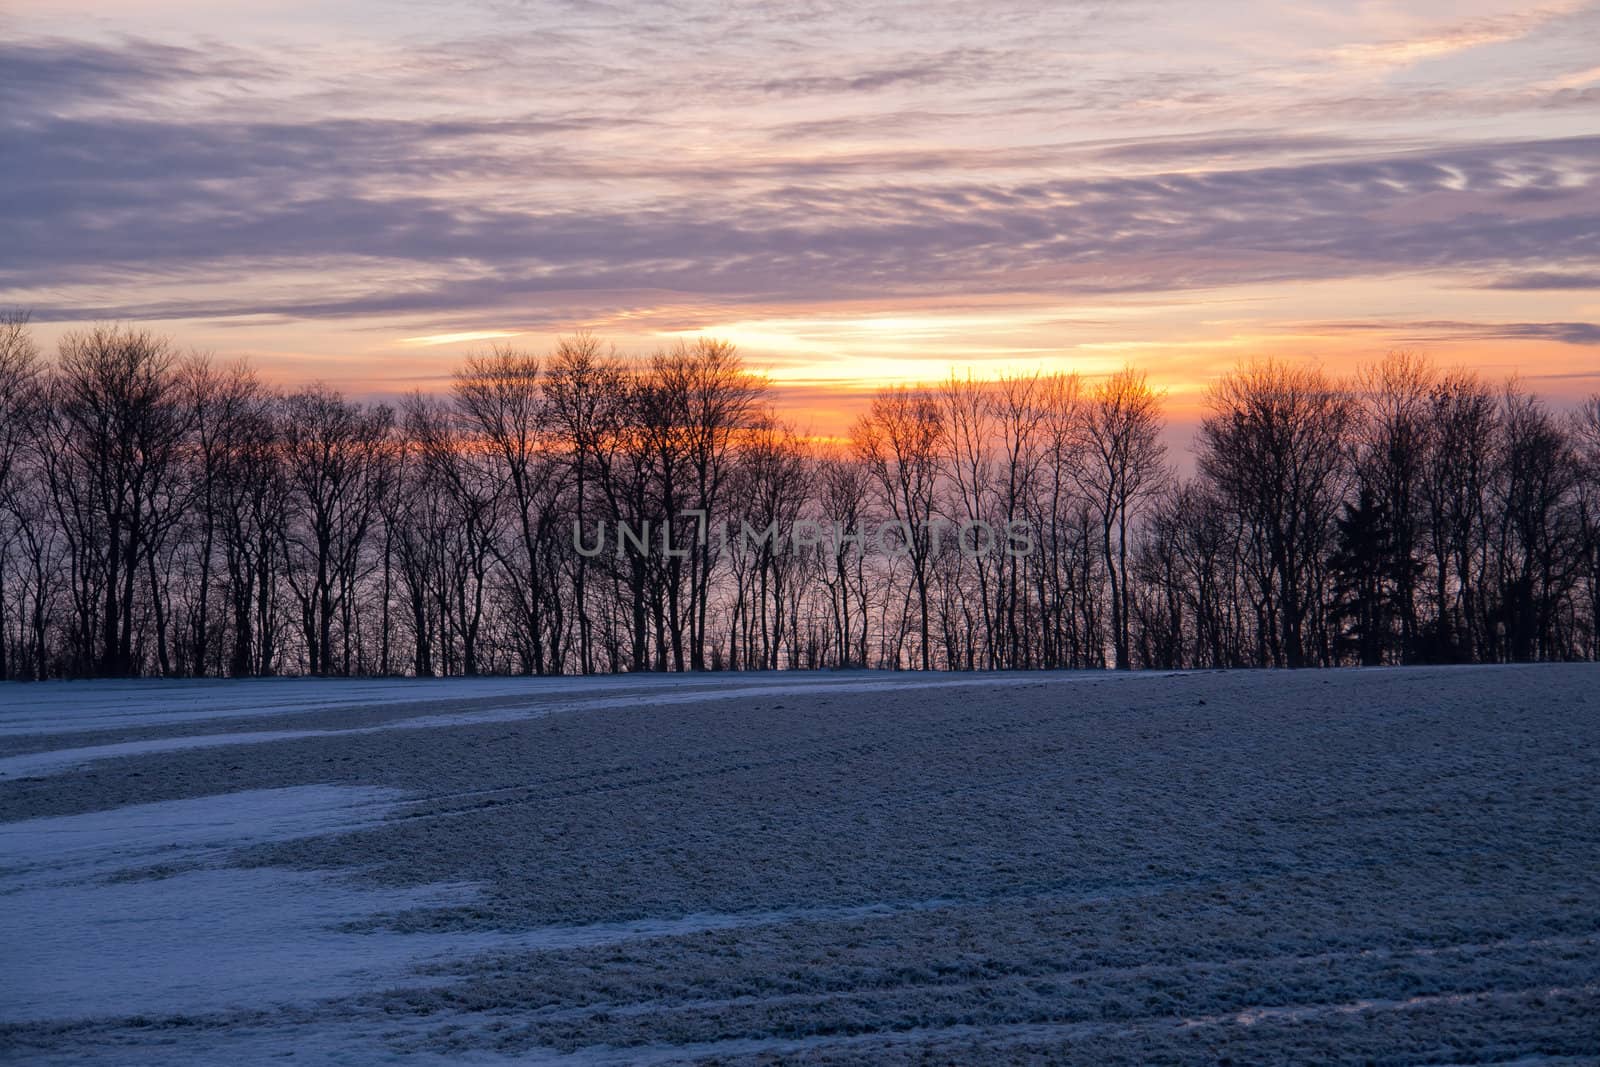 Beautiful dramatic winter sunset by Ronyzmbow